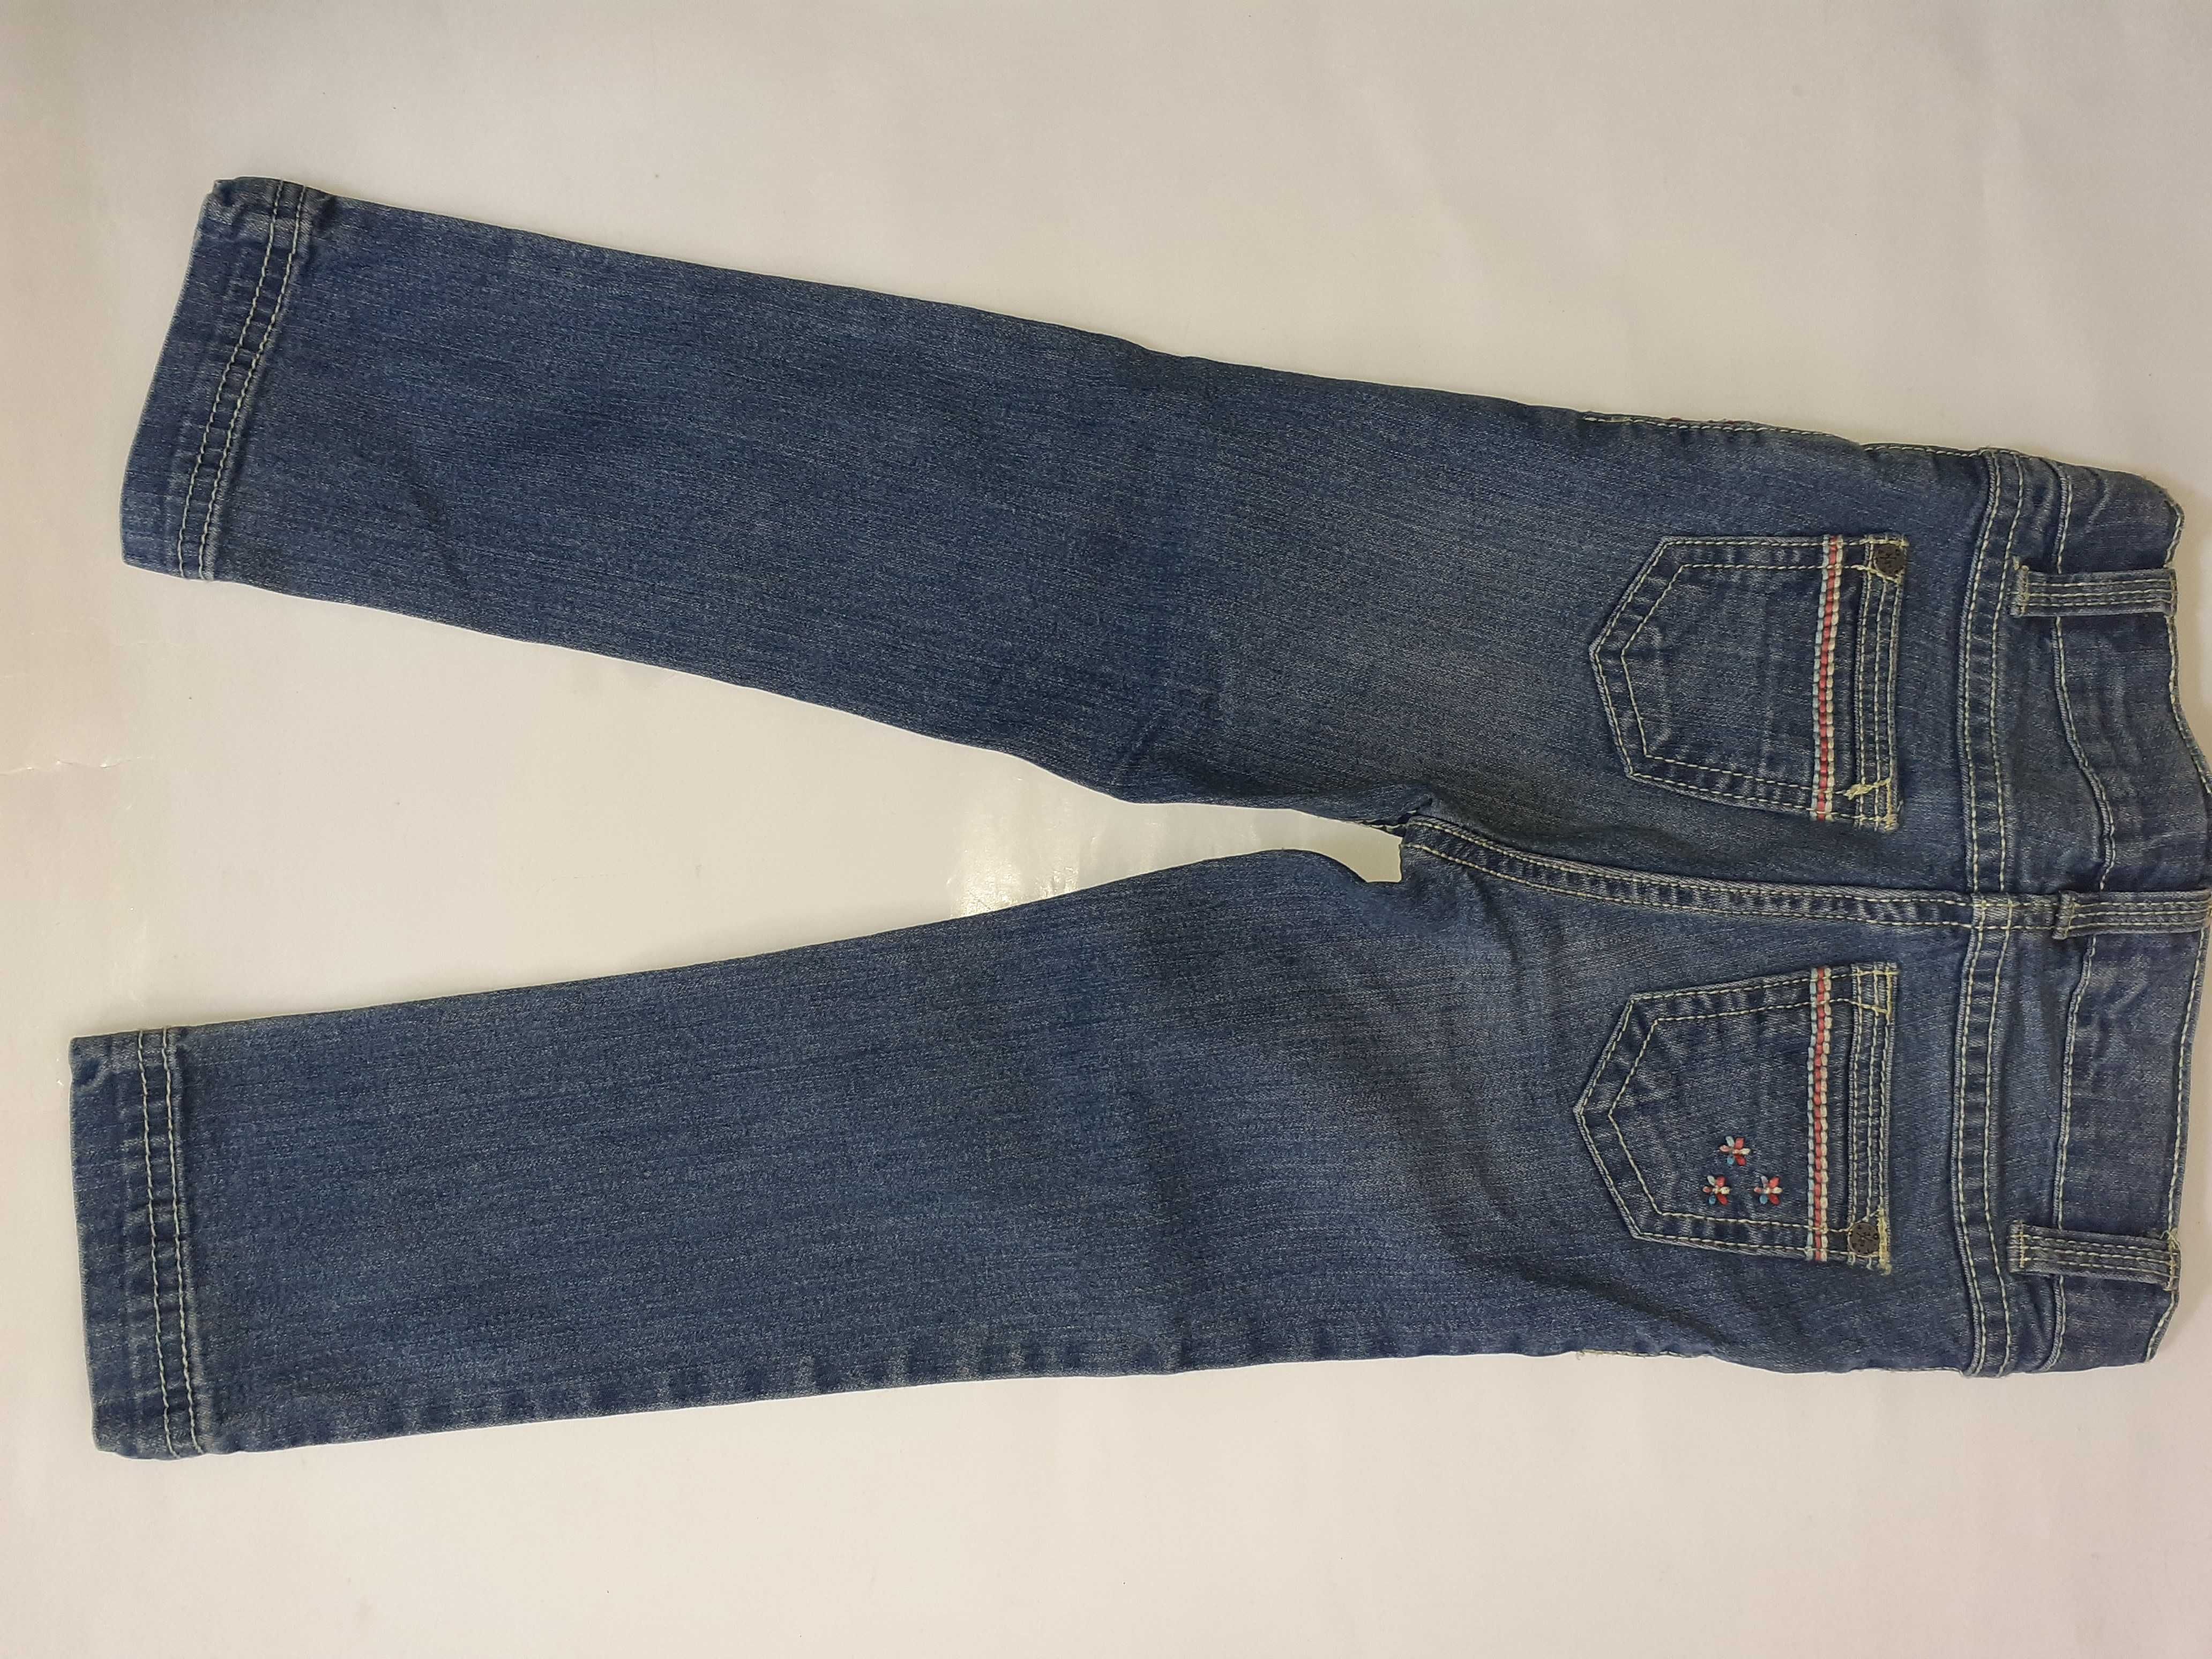 Spodnie dziecięce - jeans - r. 98-104